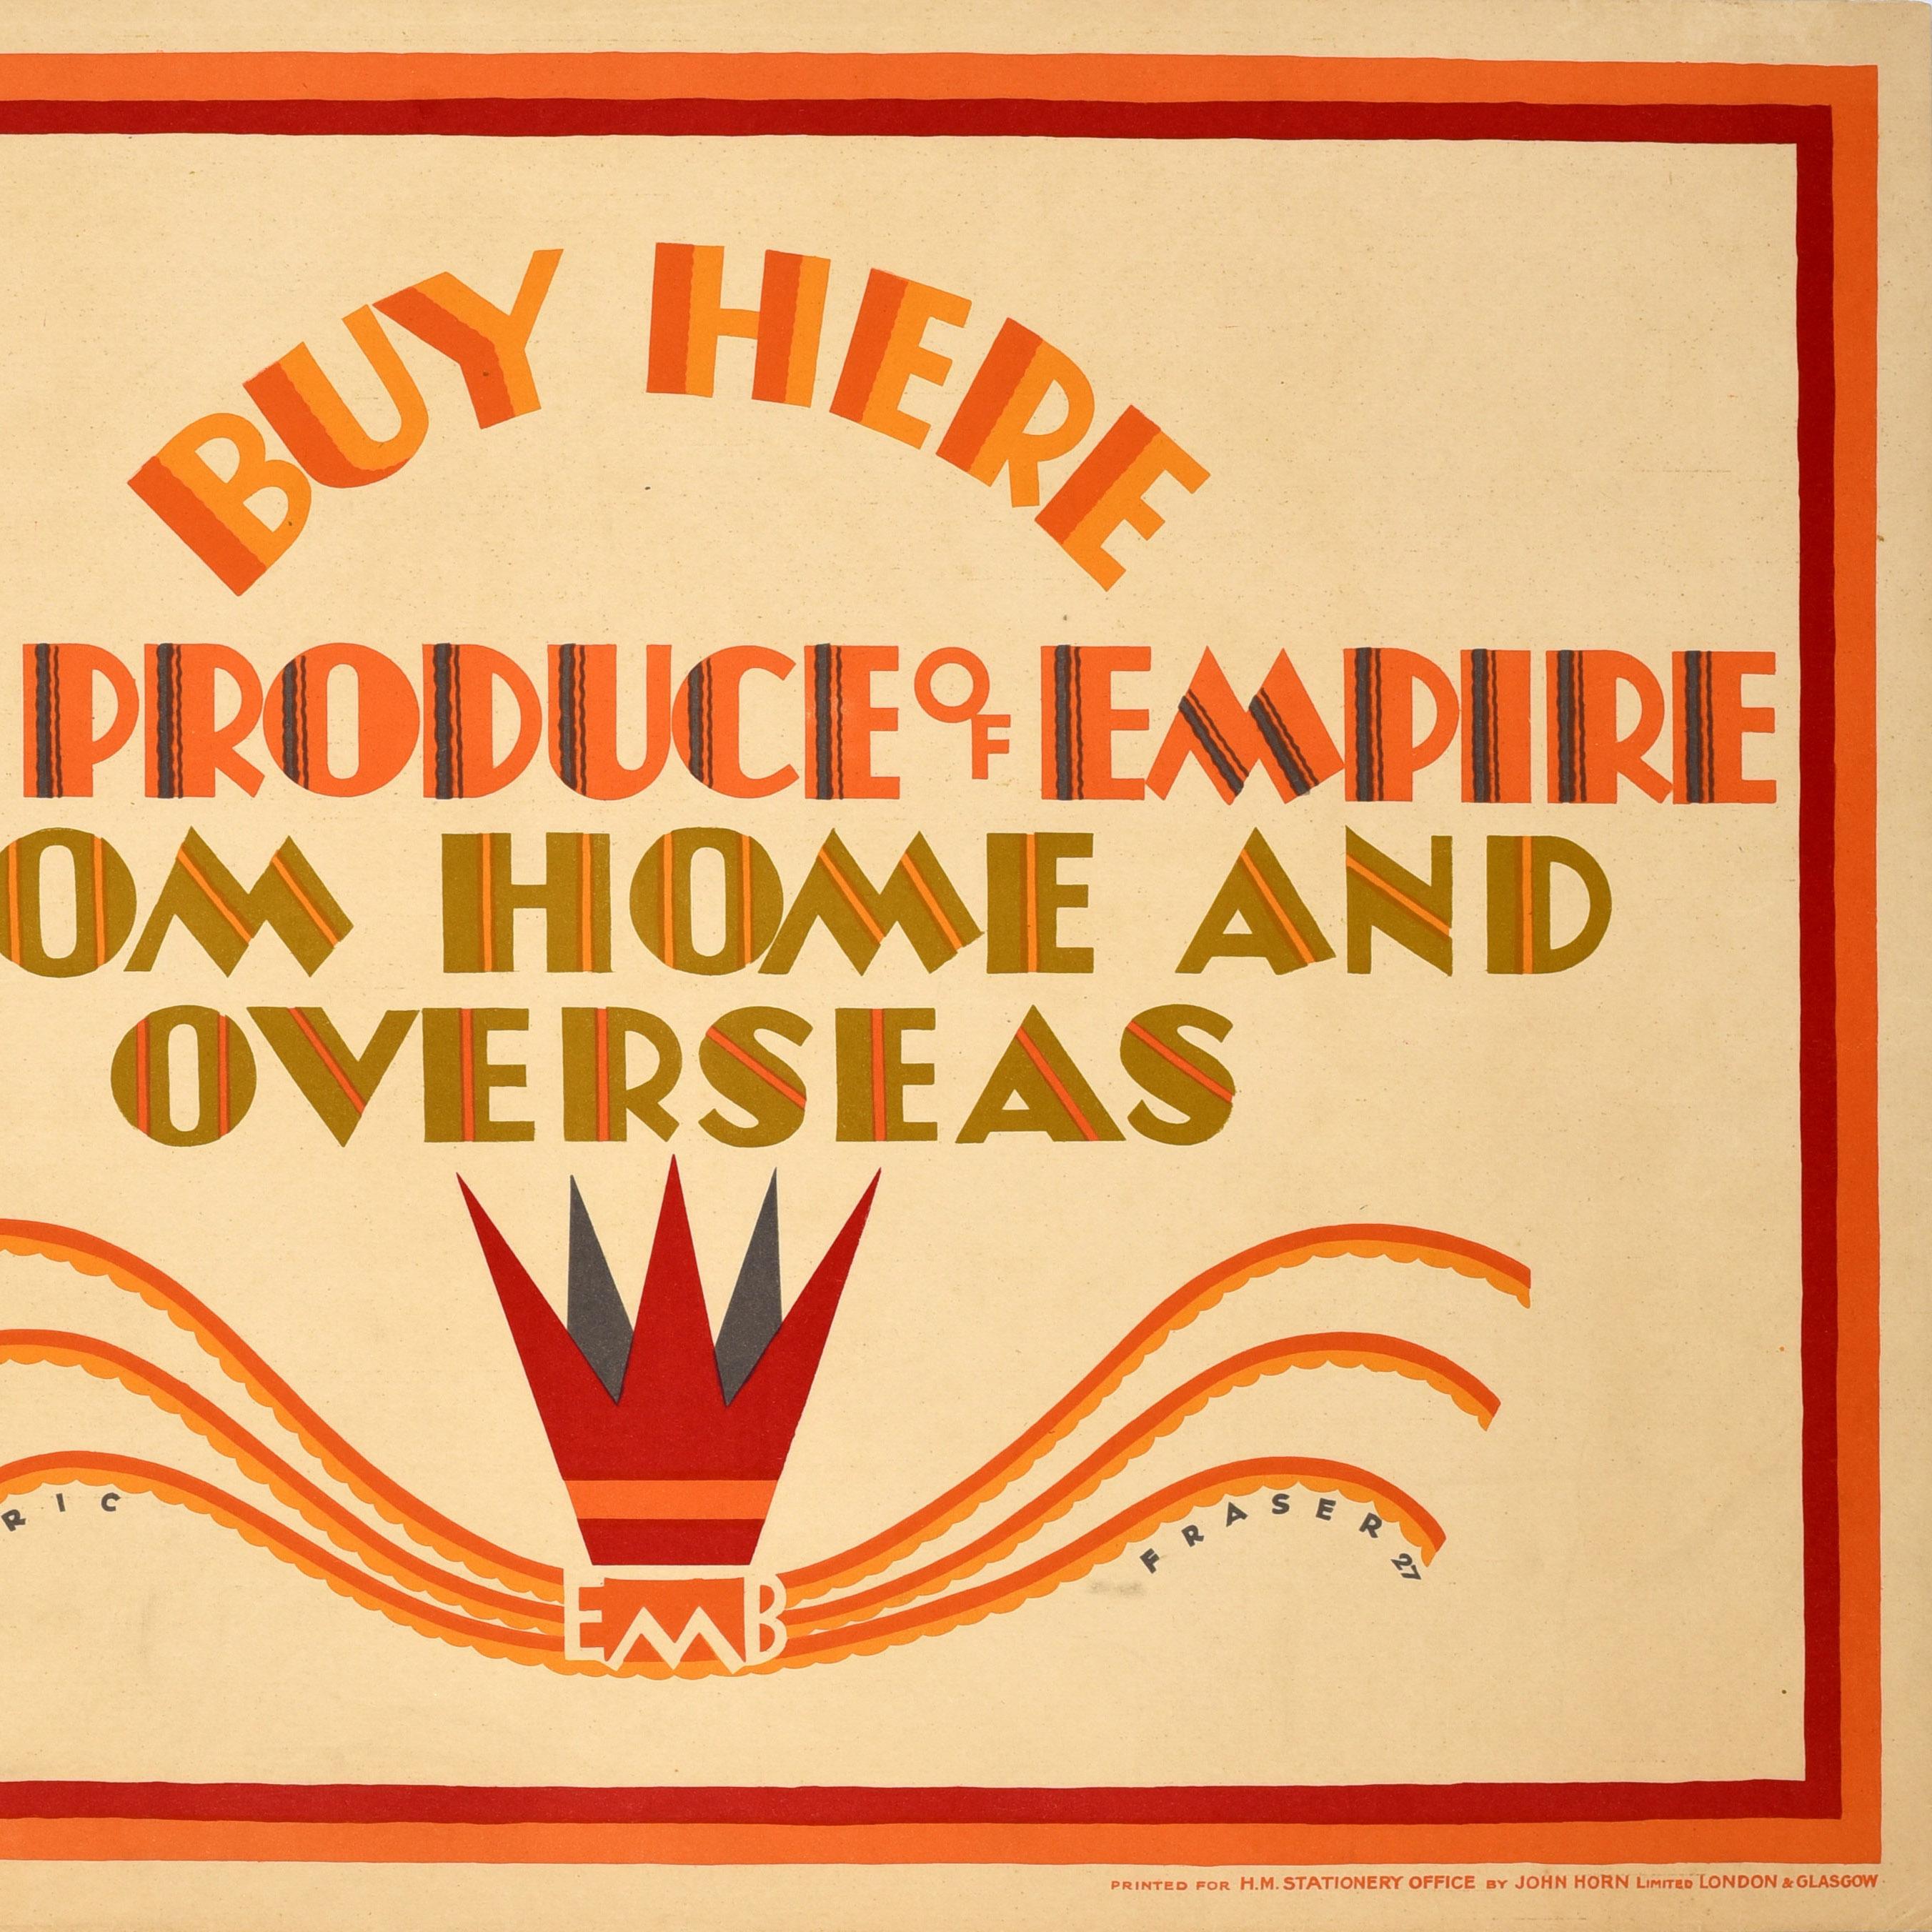 Originales Vintage-Werbeplakat, das vom Empire Marketing Board herausgegeben wurde, um die britischen Bürger zu ermutigen, ihre eigene Wirtschaft nach der Großen Depression in Amerika durch den Kauf britischer Waren zu unterstützen - Buy Here The